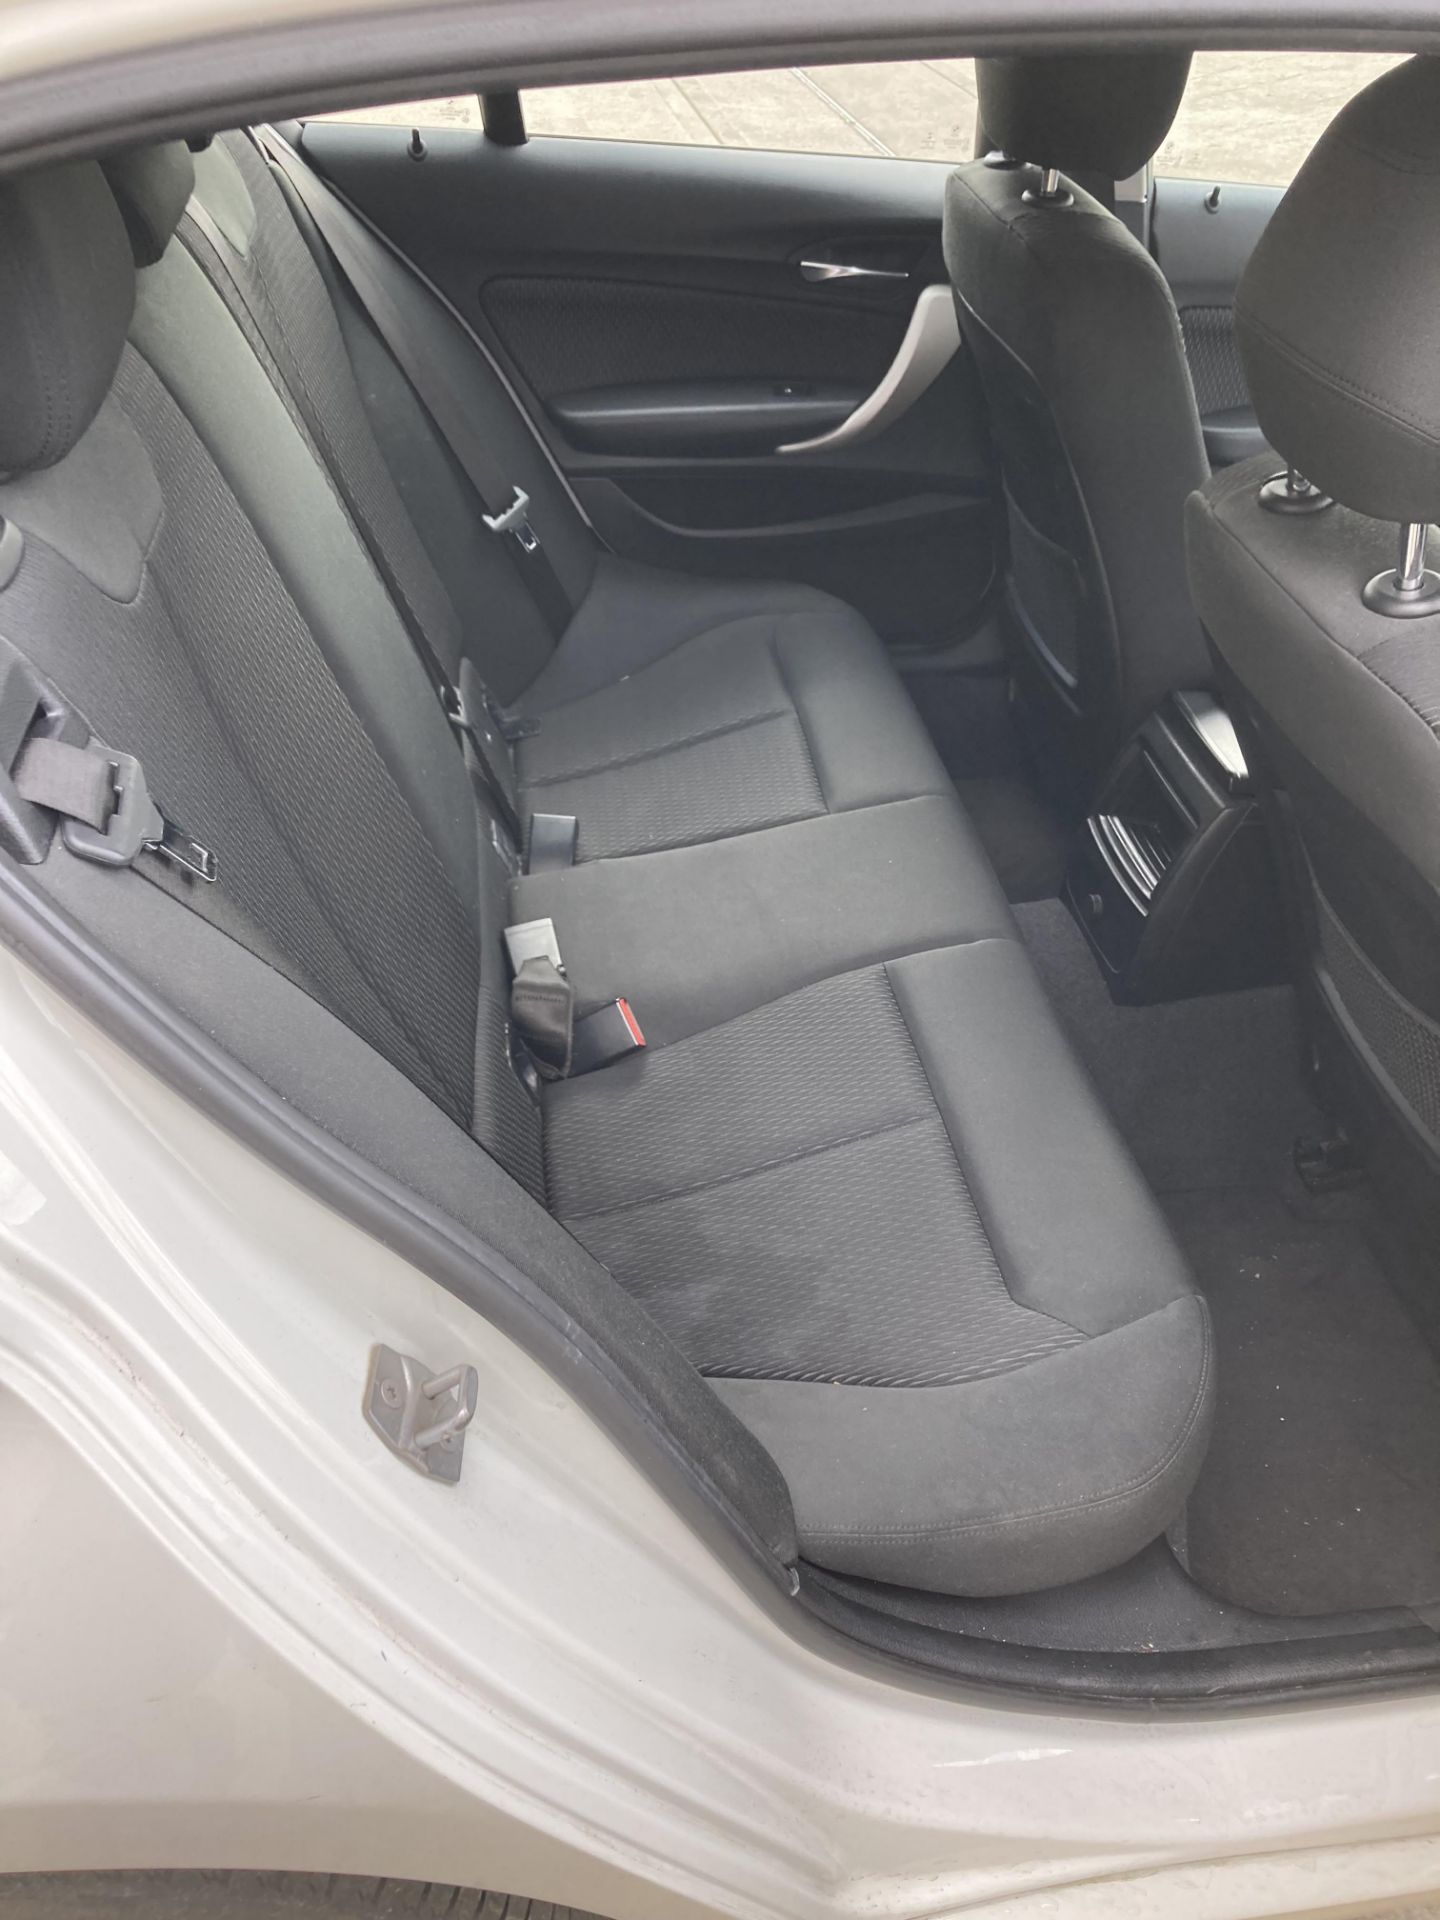 BMW 116d five door hatchback - diesel - white - dark grey cloth interior, with alloy wheels. - Image 10 of 11